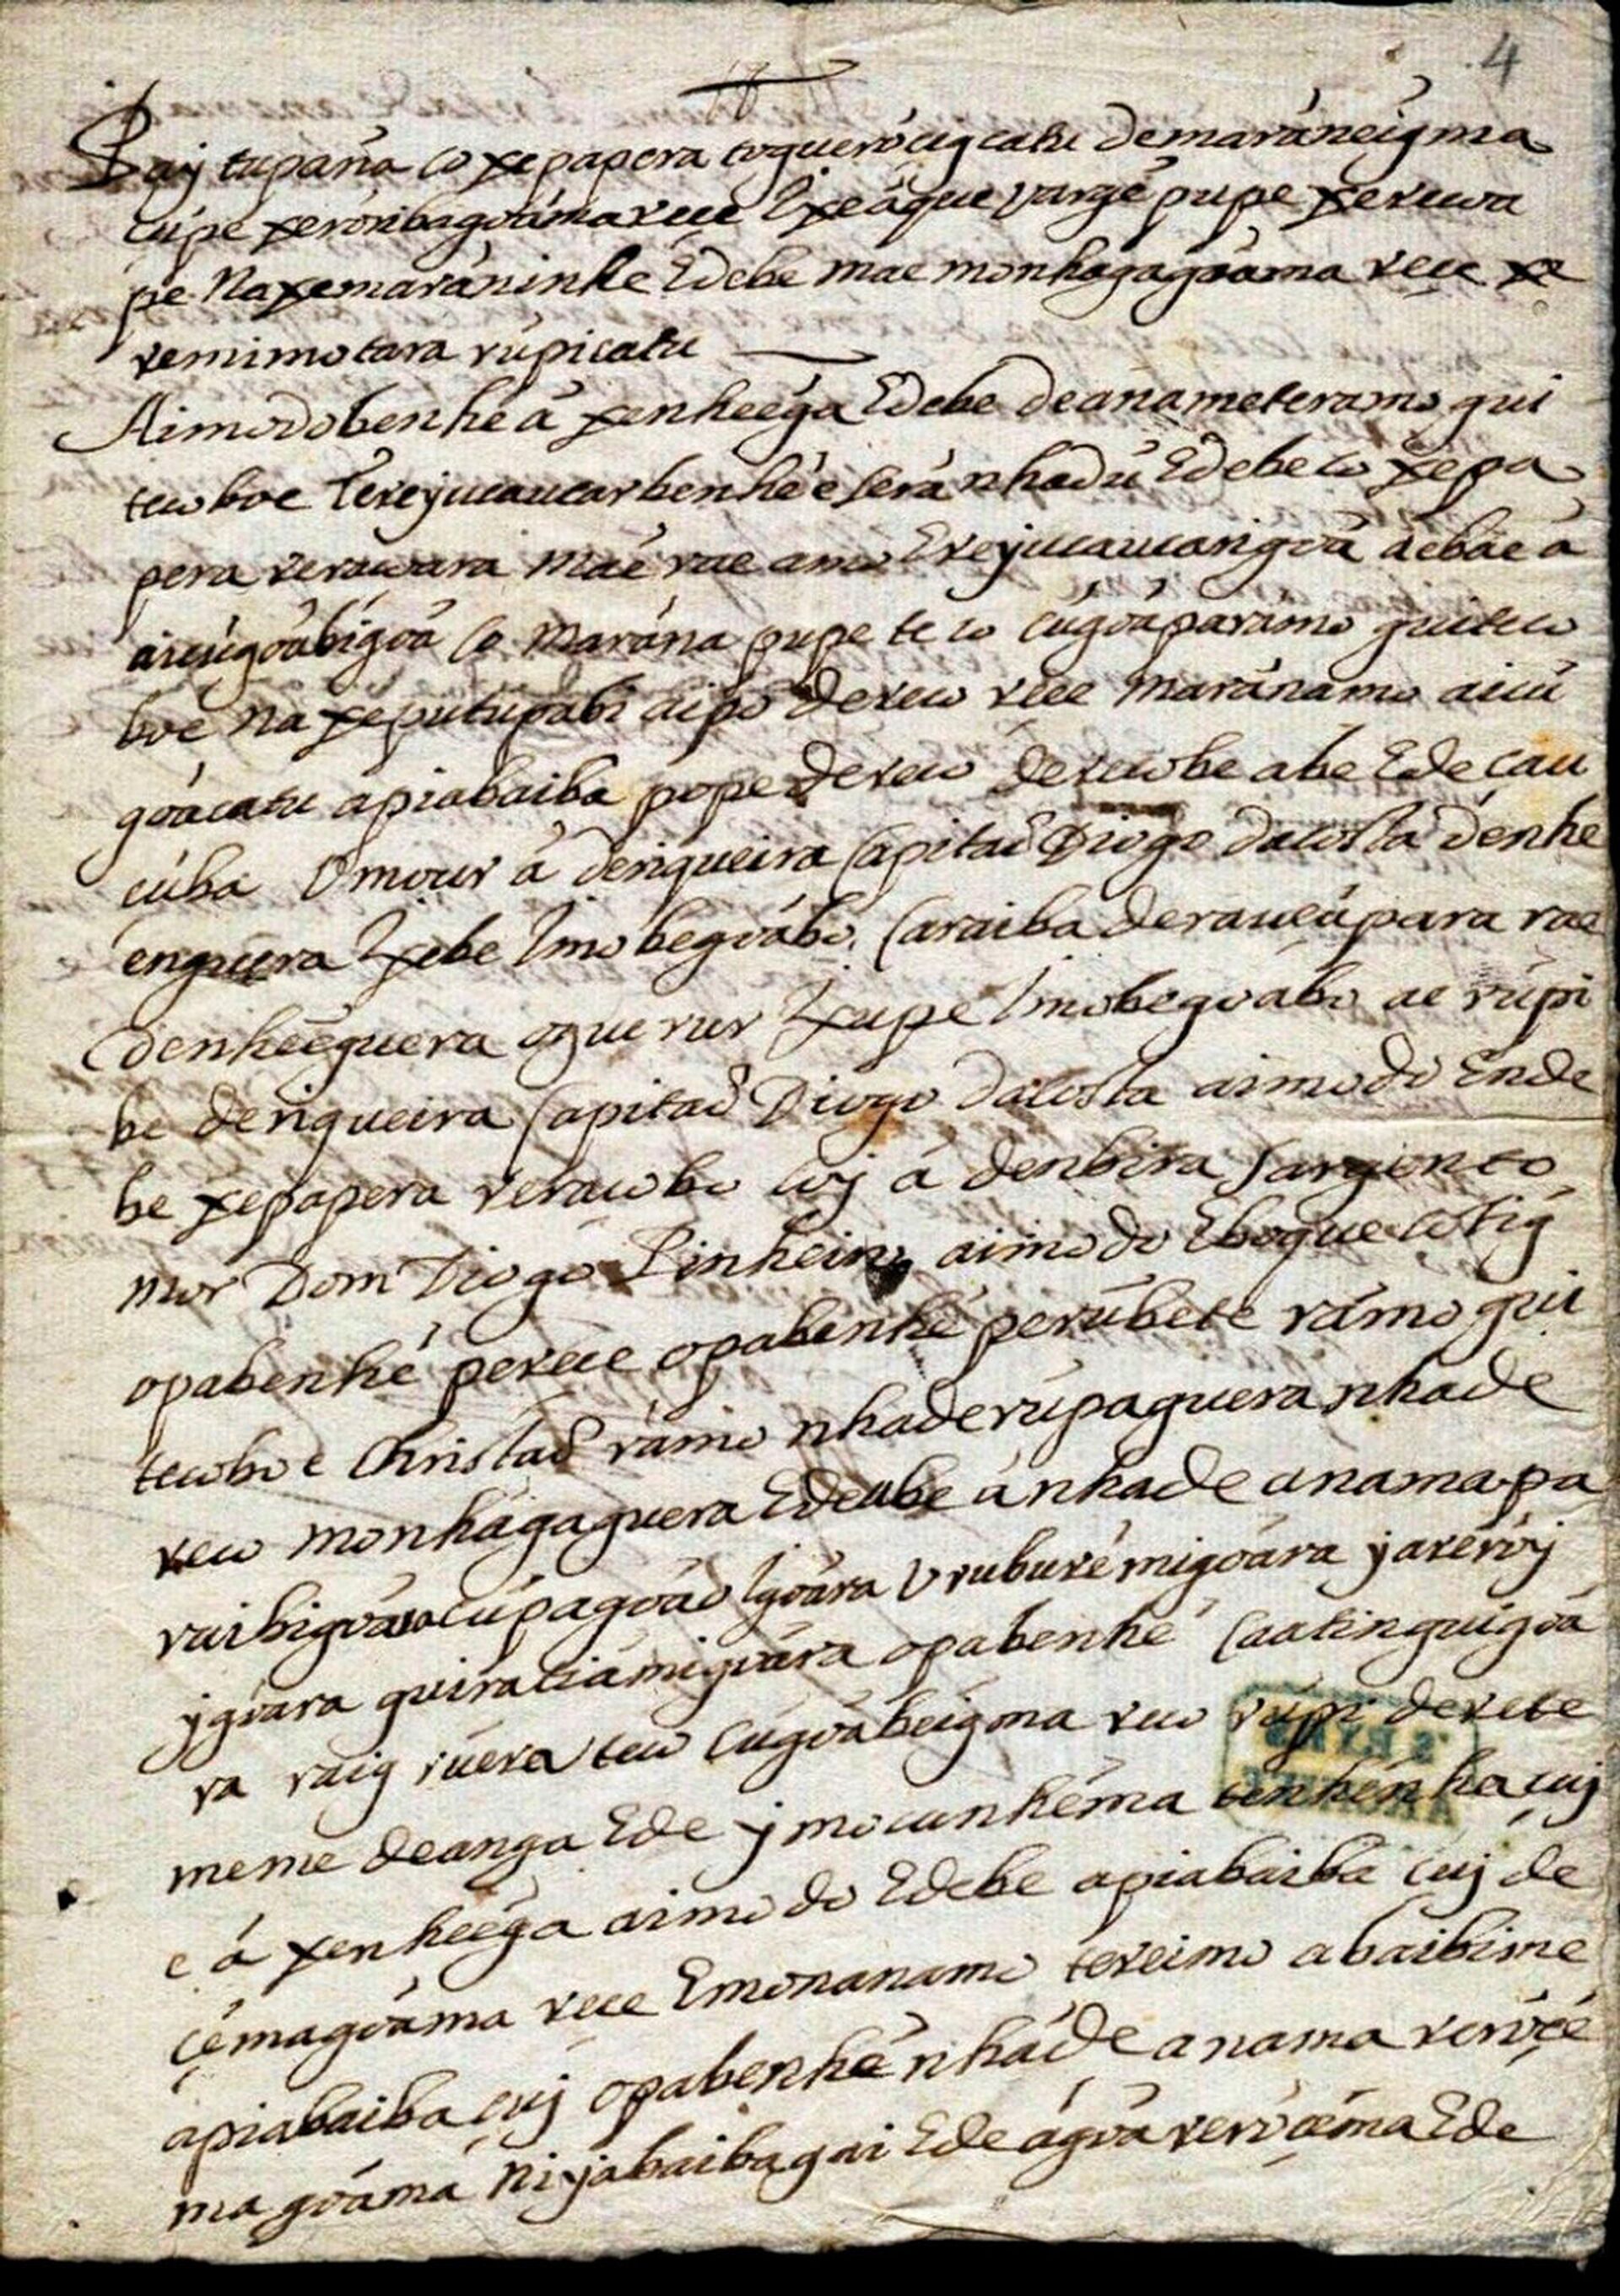 Carta em tupi de Felipe Camarão a Pedro Poti, de 4 de outubro de 1645 - Sputnik Brasil, 1920, 09.11.2021